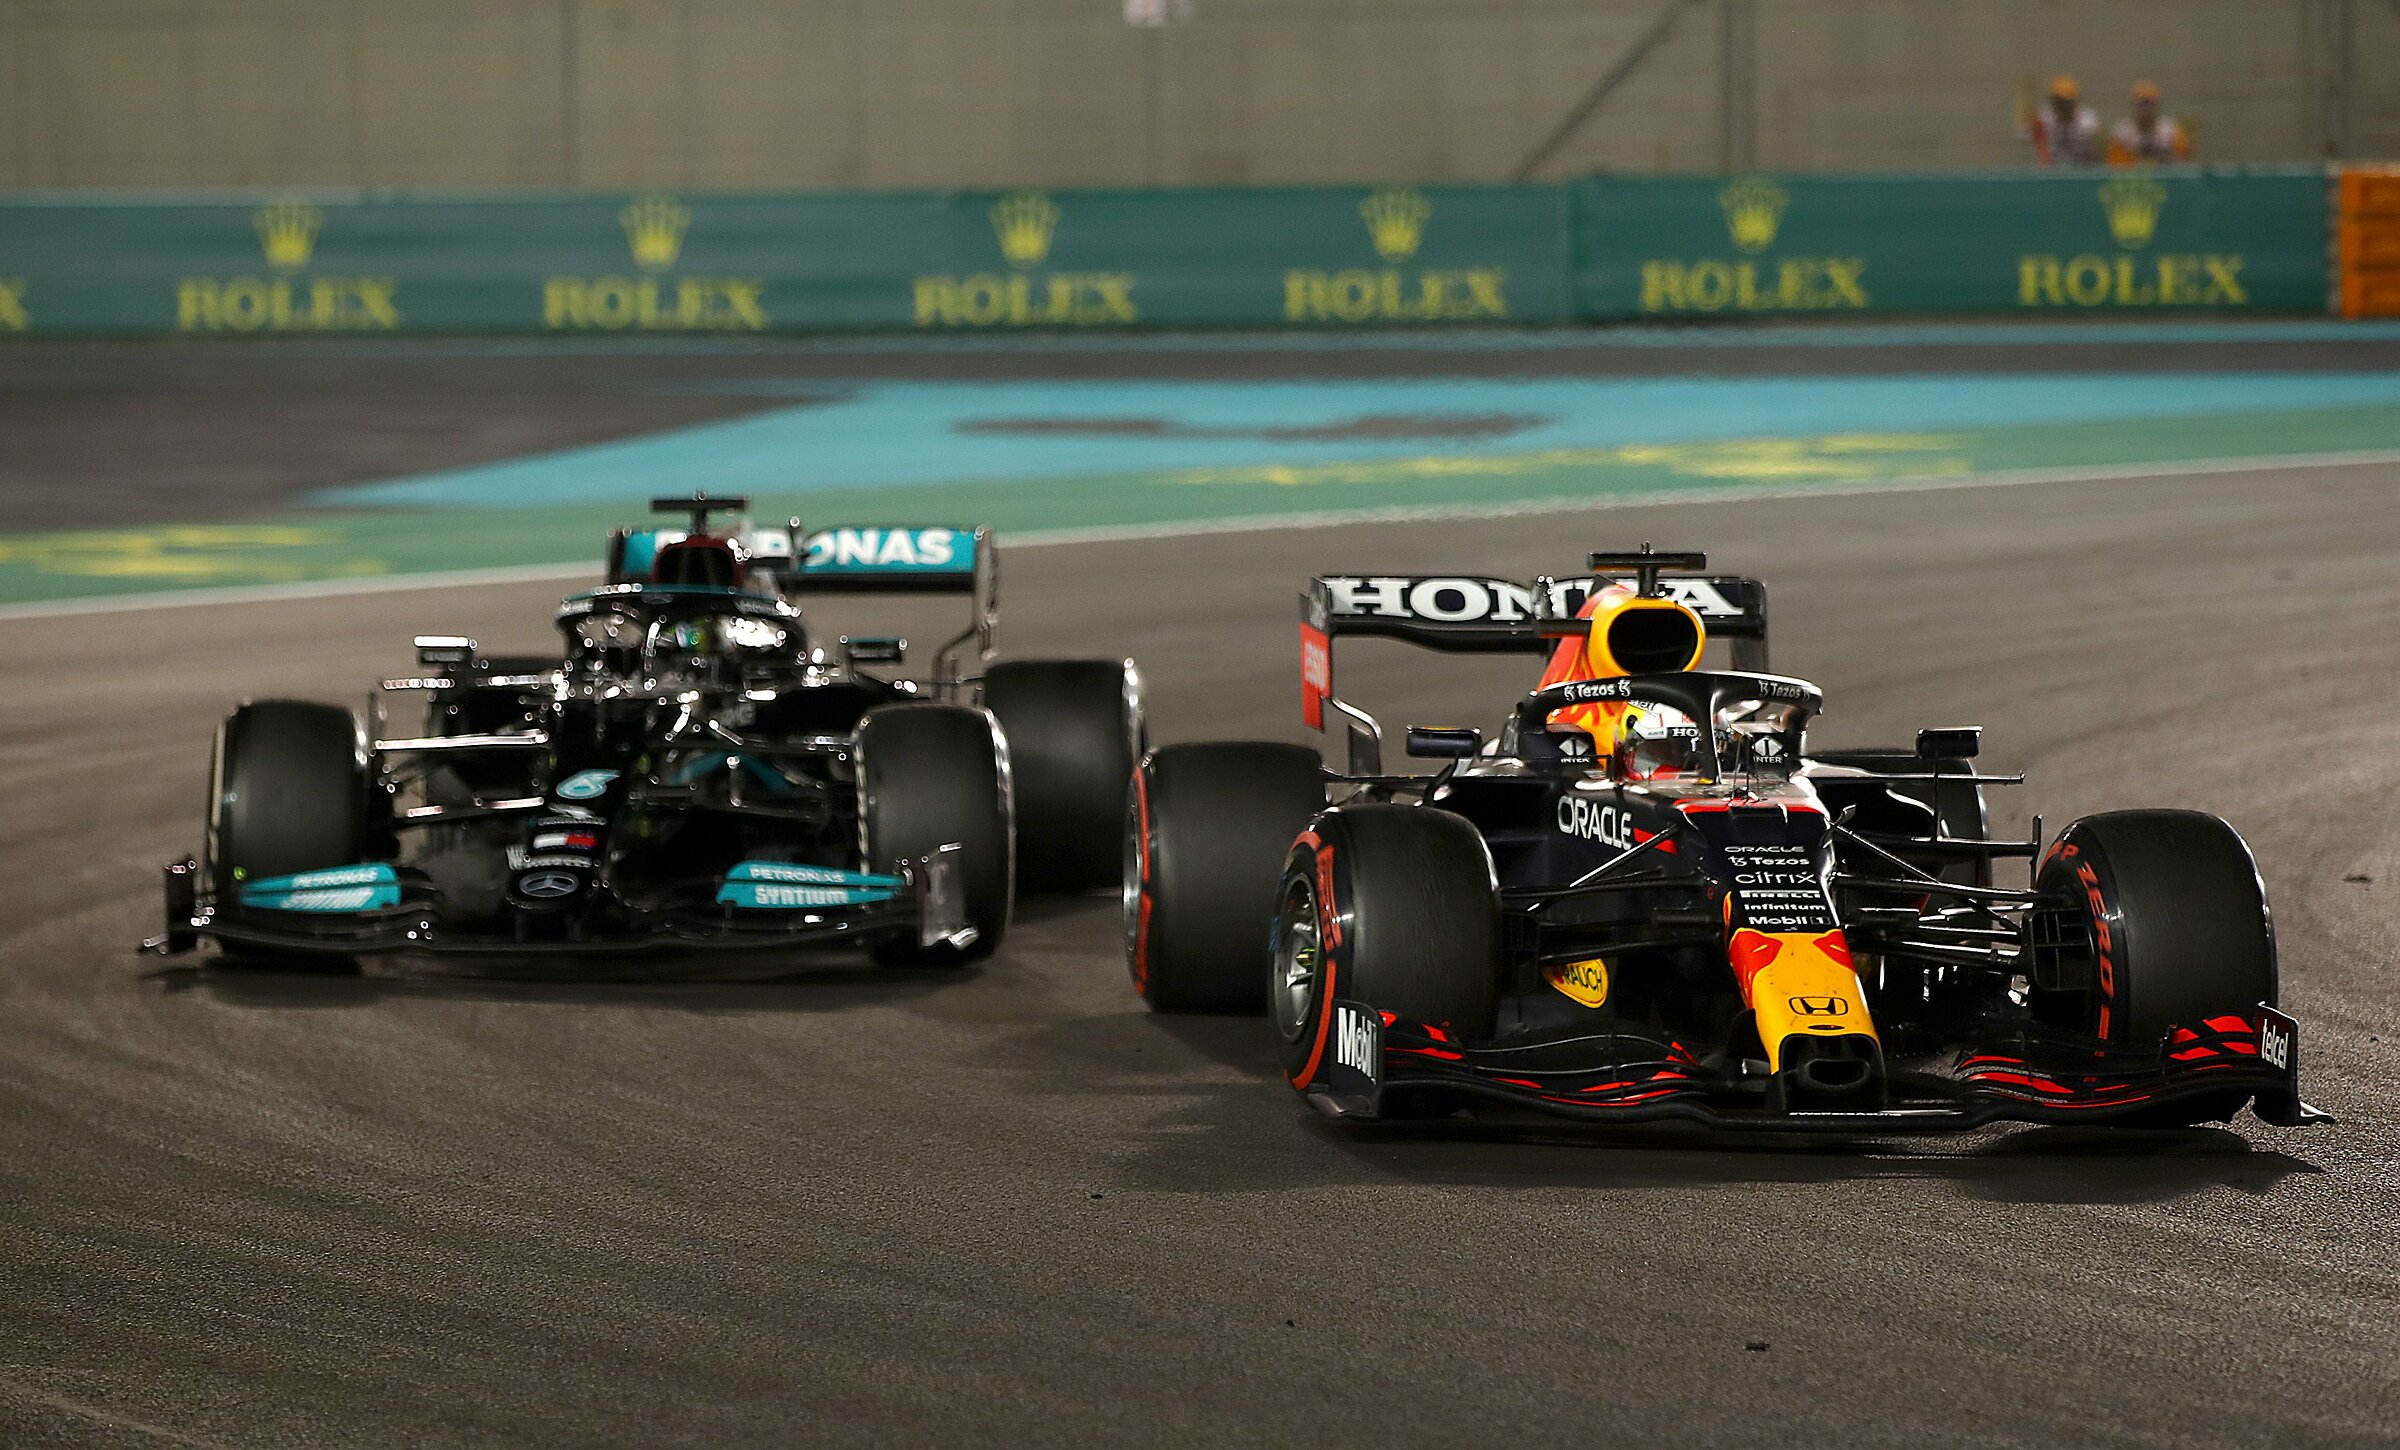 Khoảnh khắc Hamilton rớ lại phía sau và bất lực nhìn Verstappen về nhất. Ảnh: Twitter / Formula 1